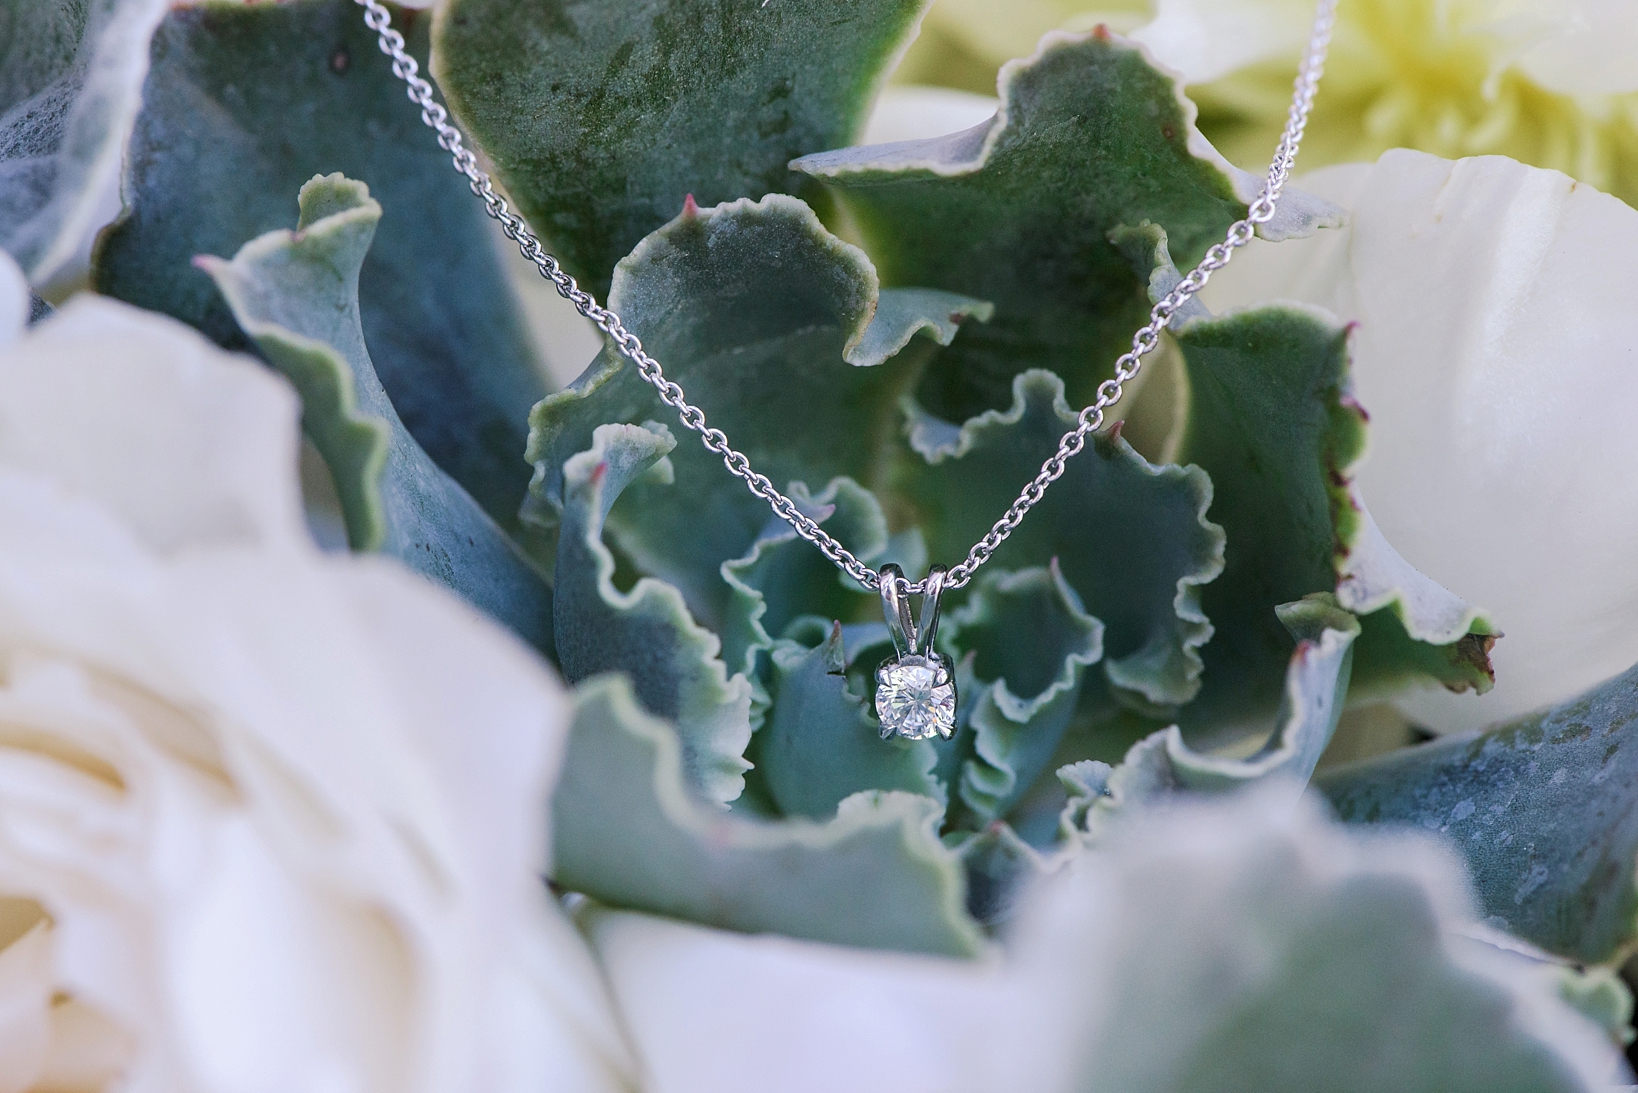 Brides diamond necklace against a succulent floral background